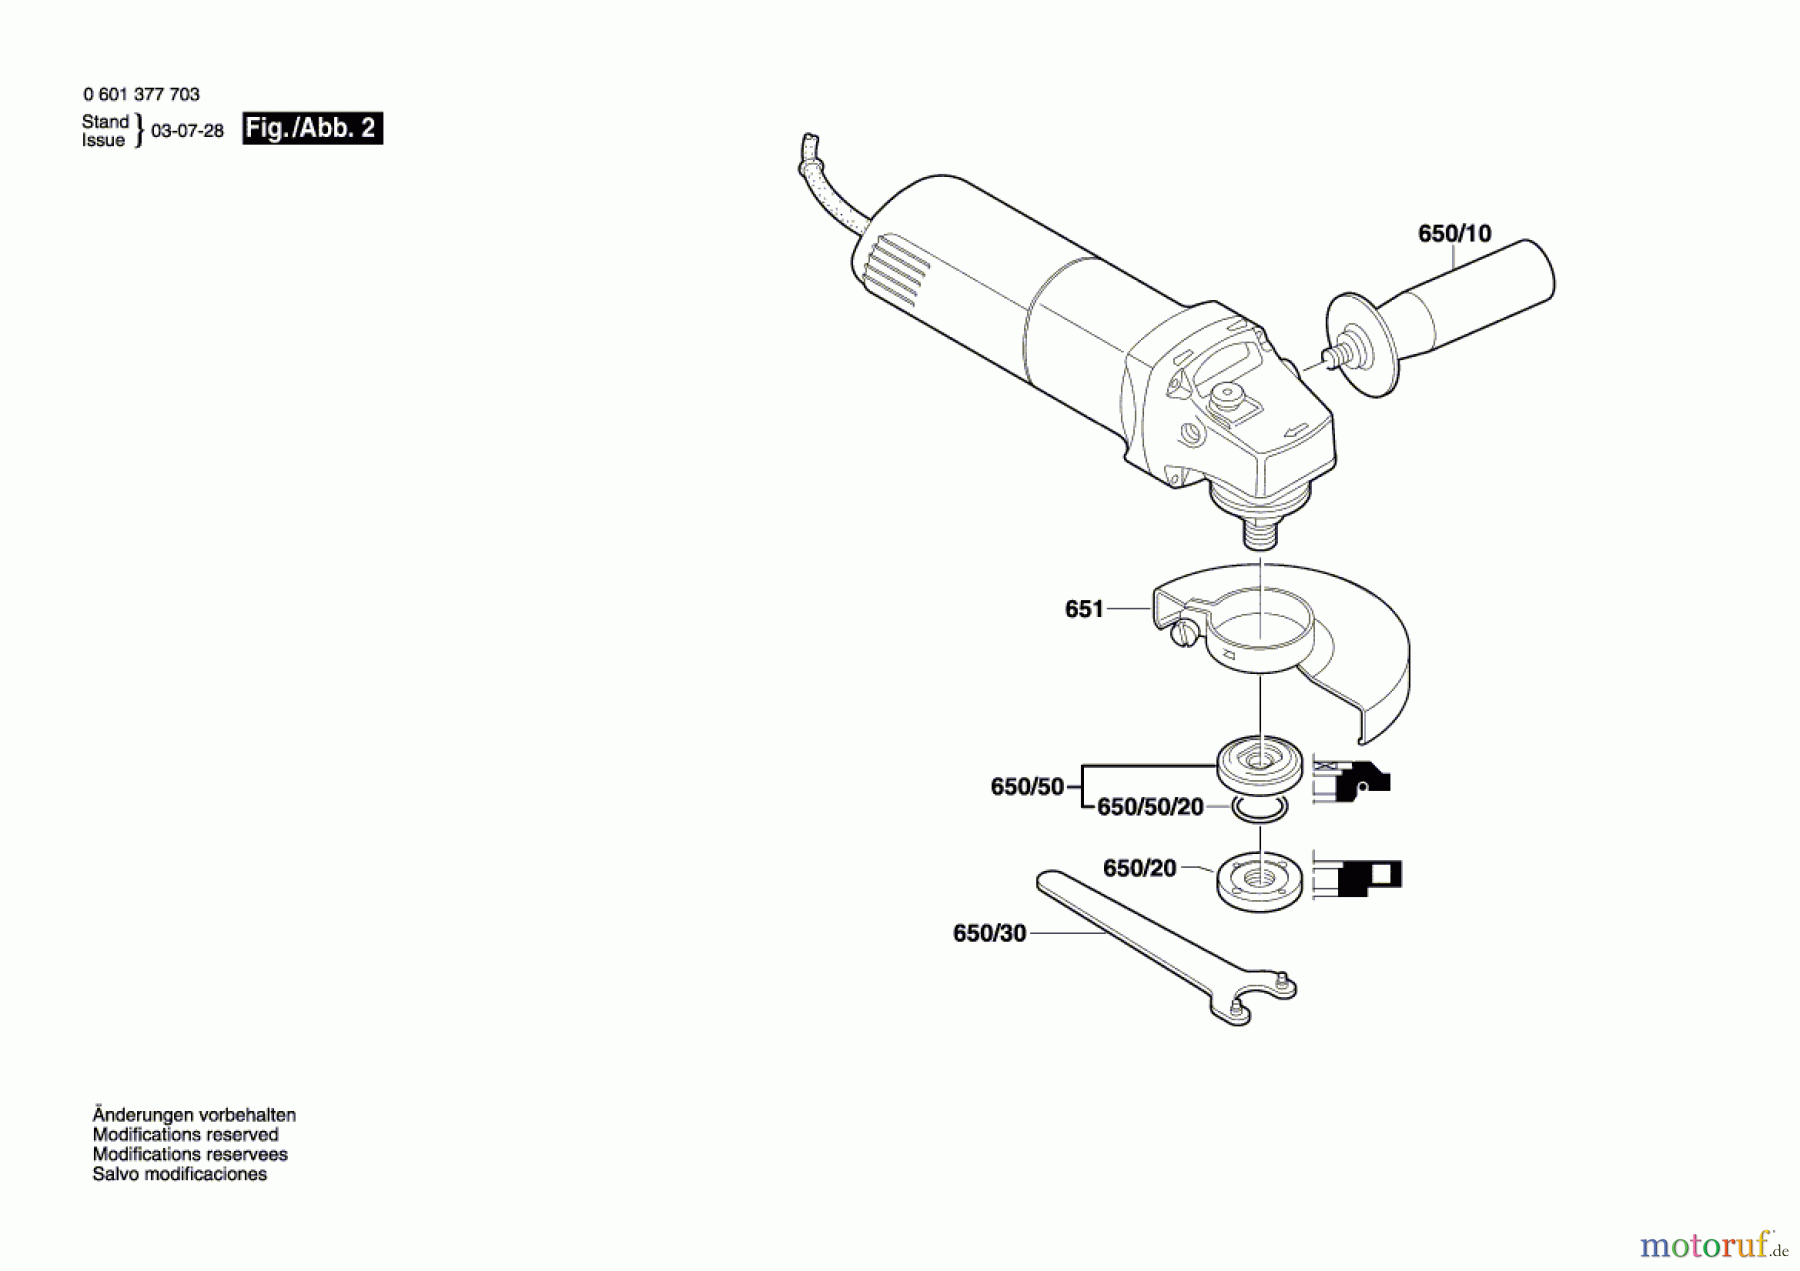  Bosch Werkzeug Winkelschleifer GWS 8-125 C Seite 2